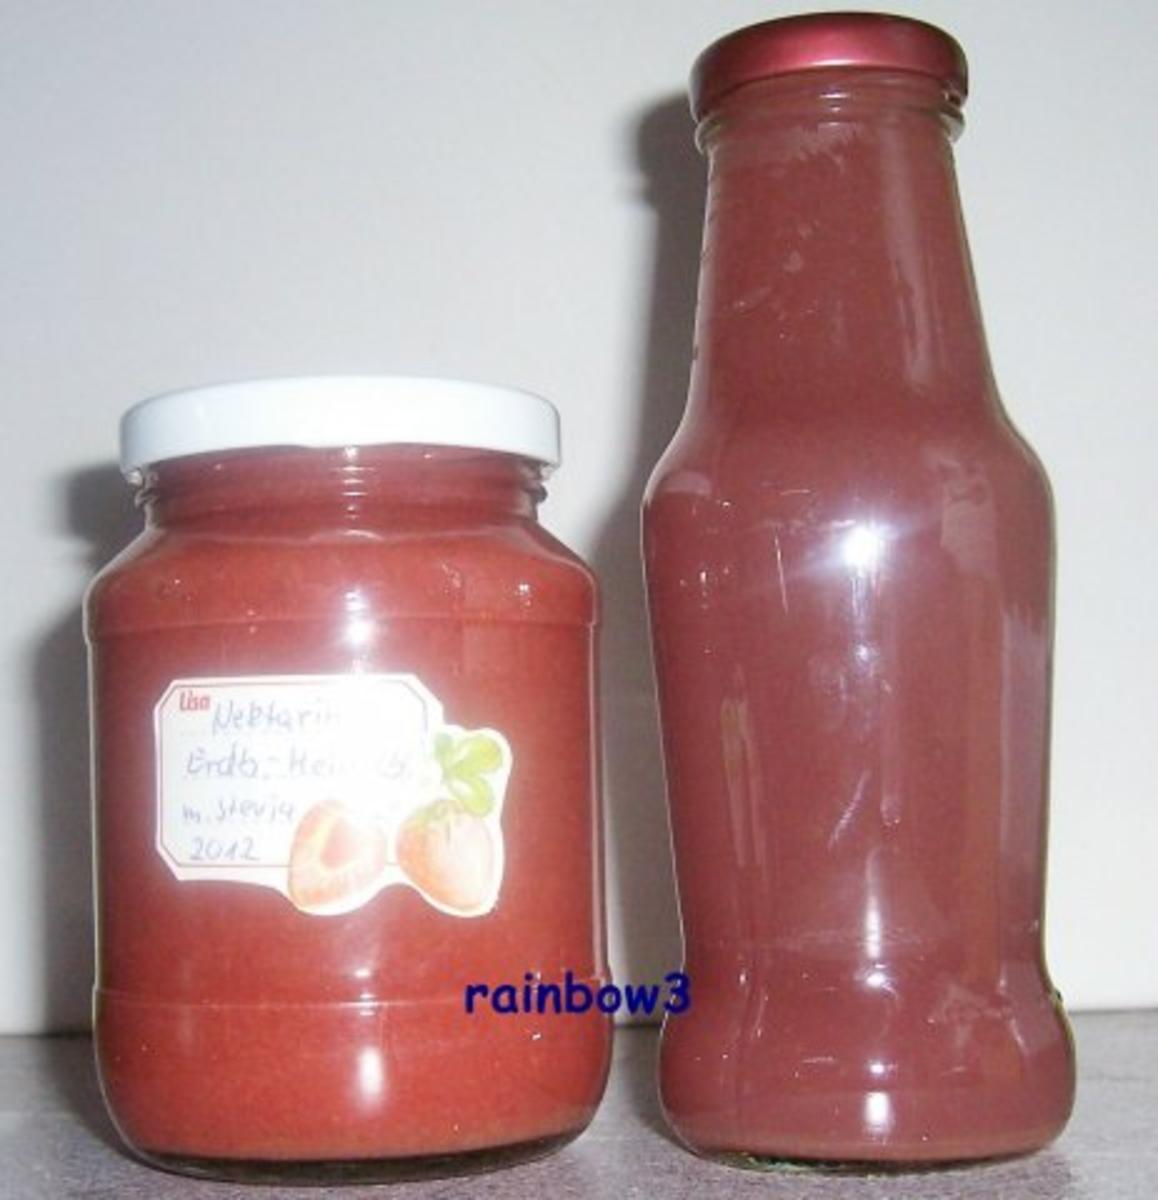 Bilder für Einmachen: Nektarinen-Erdbeer-Heidelbeer-Marmelade - Rezept